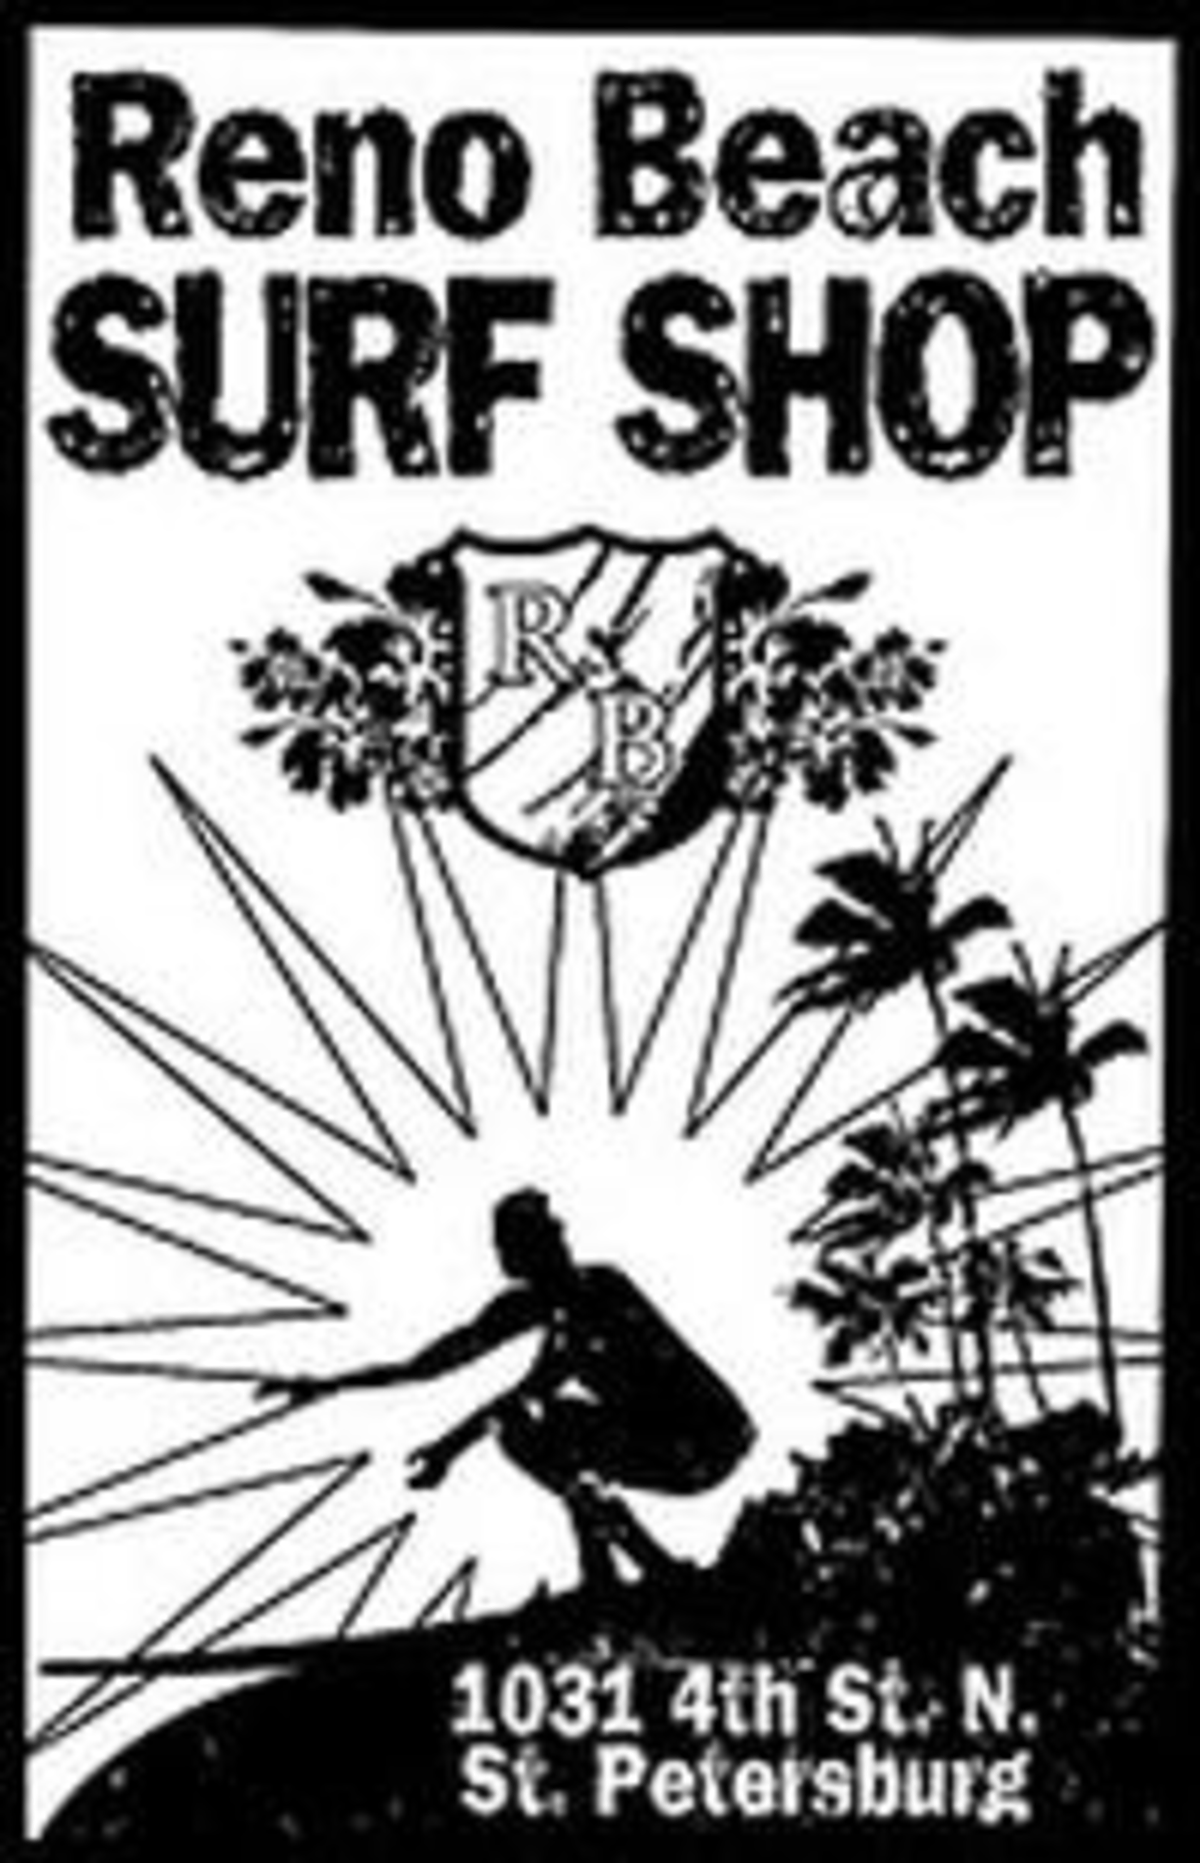 Best surf shop